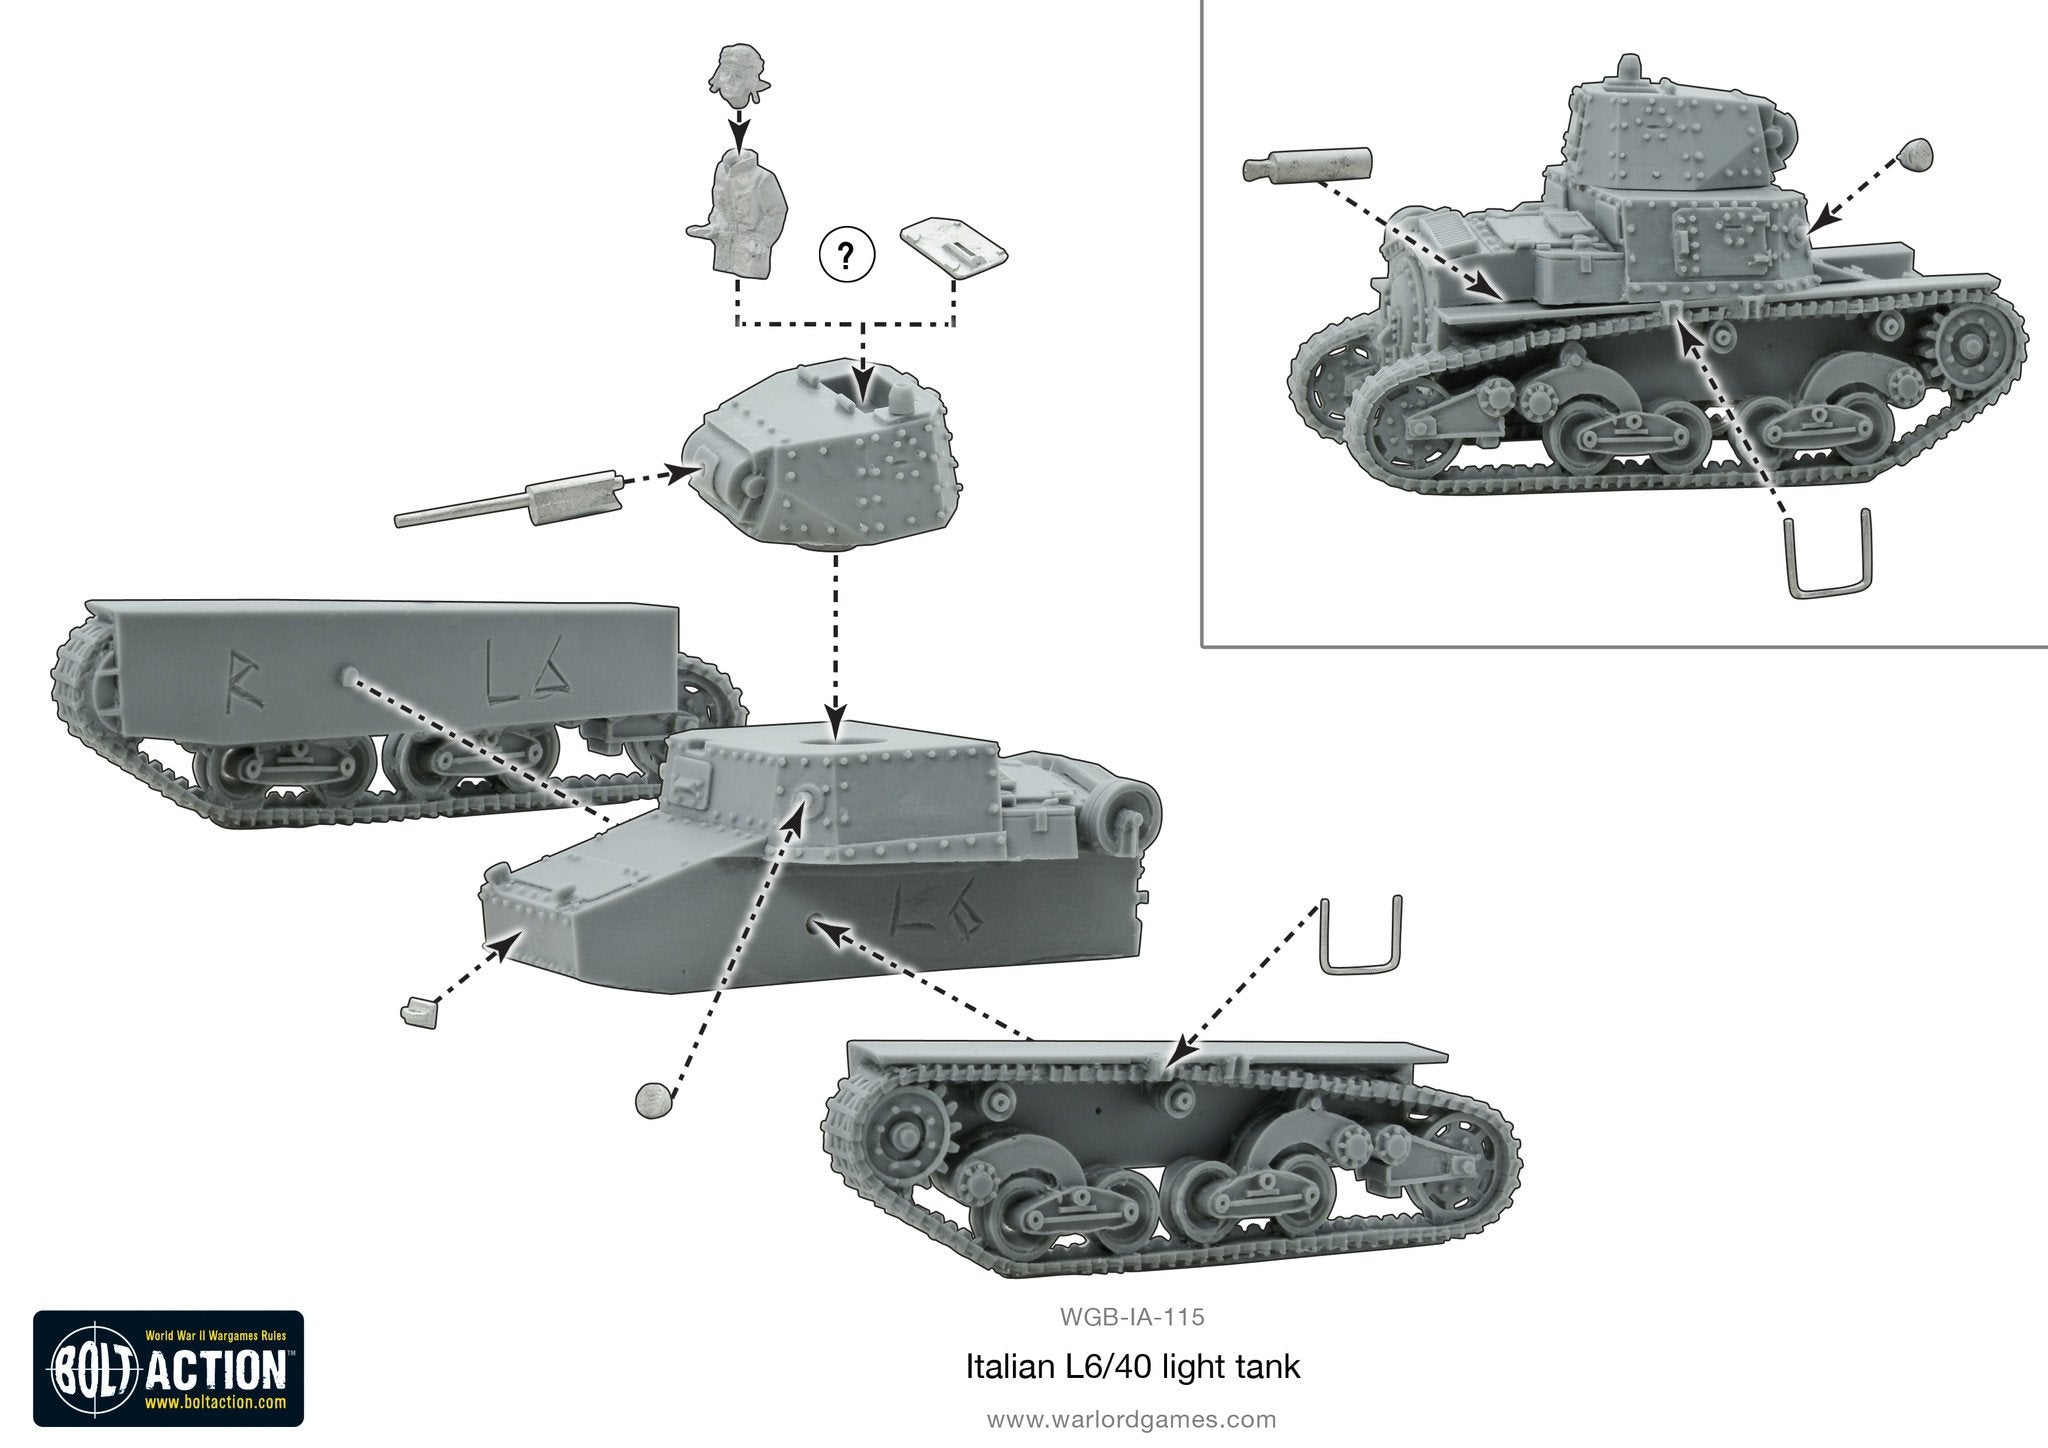 Italian L6/40 Light Tank